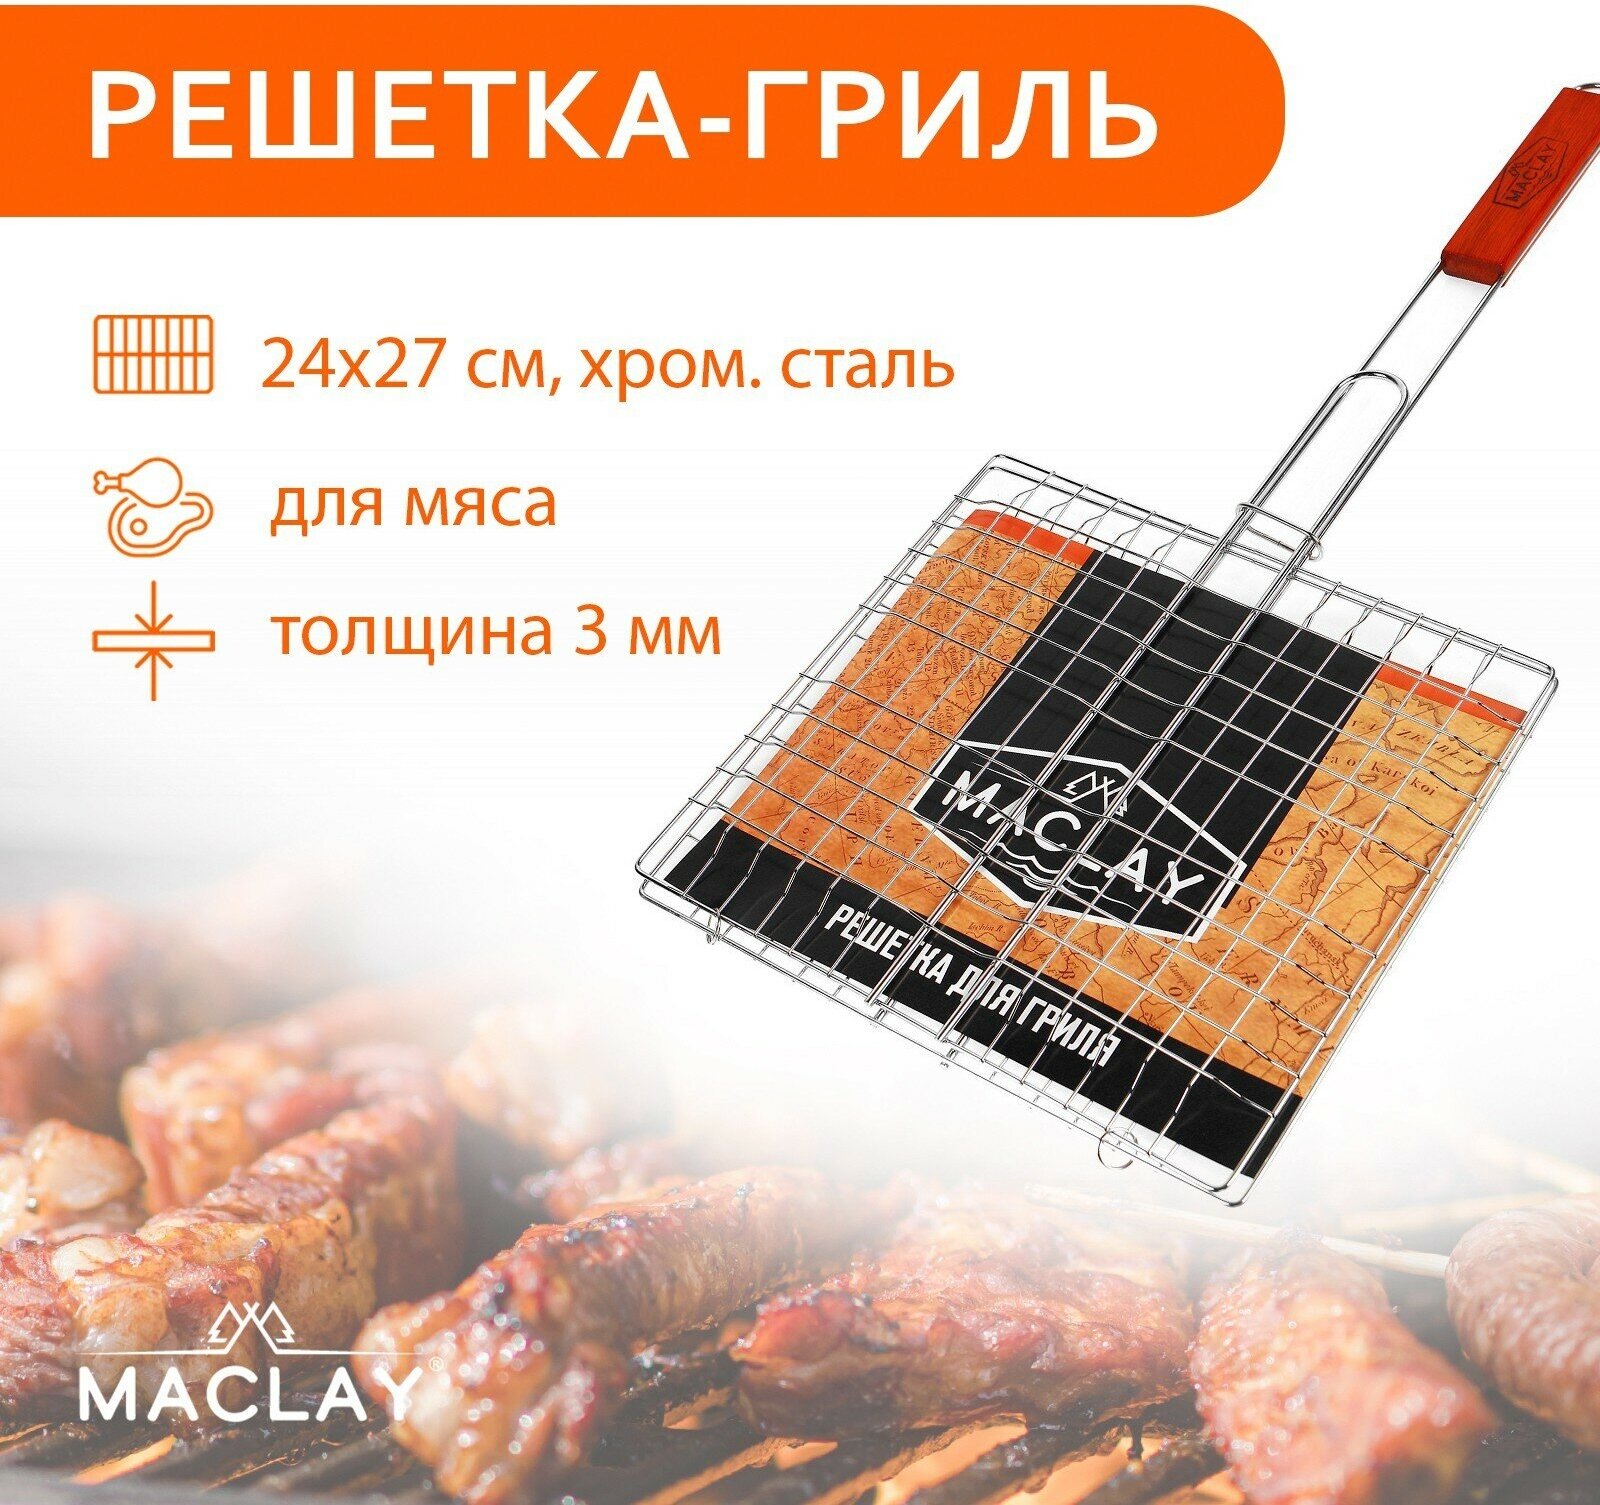 Решётка-гриль для мяса Maclay Lux хромированная сталь 55x27 см рабочая поверхность 27x24 см